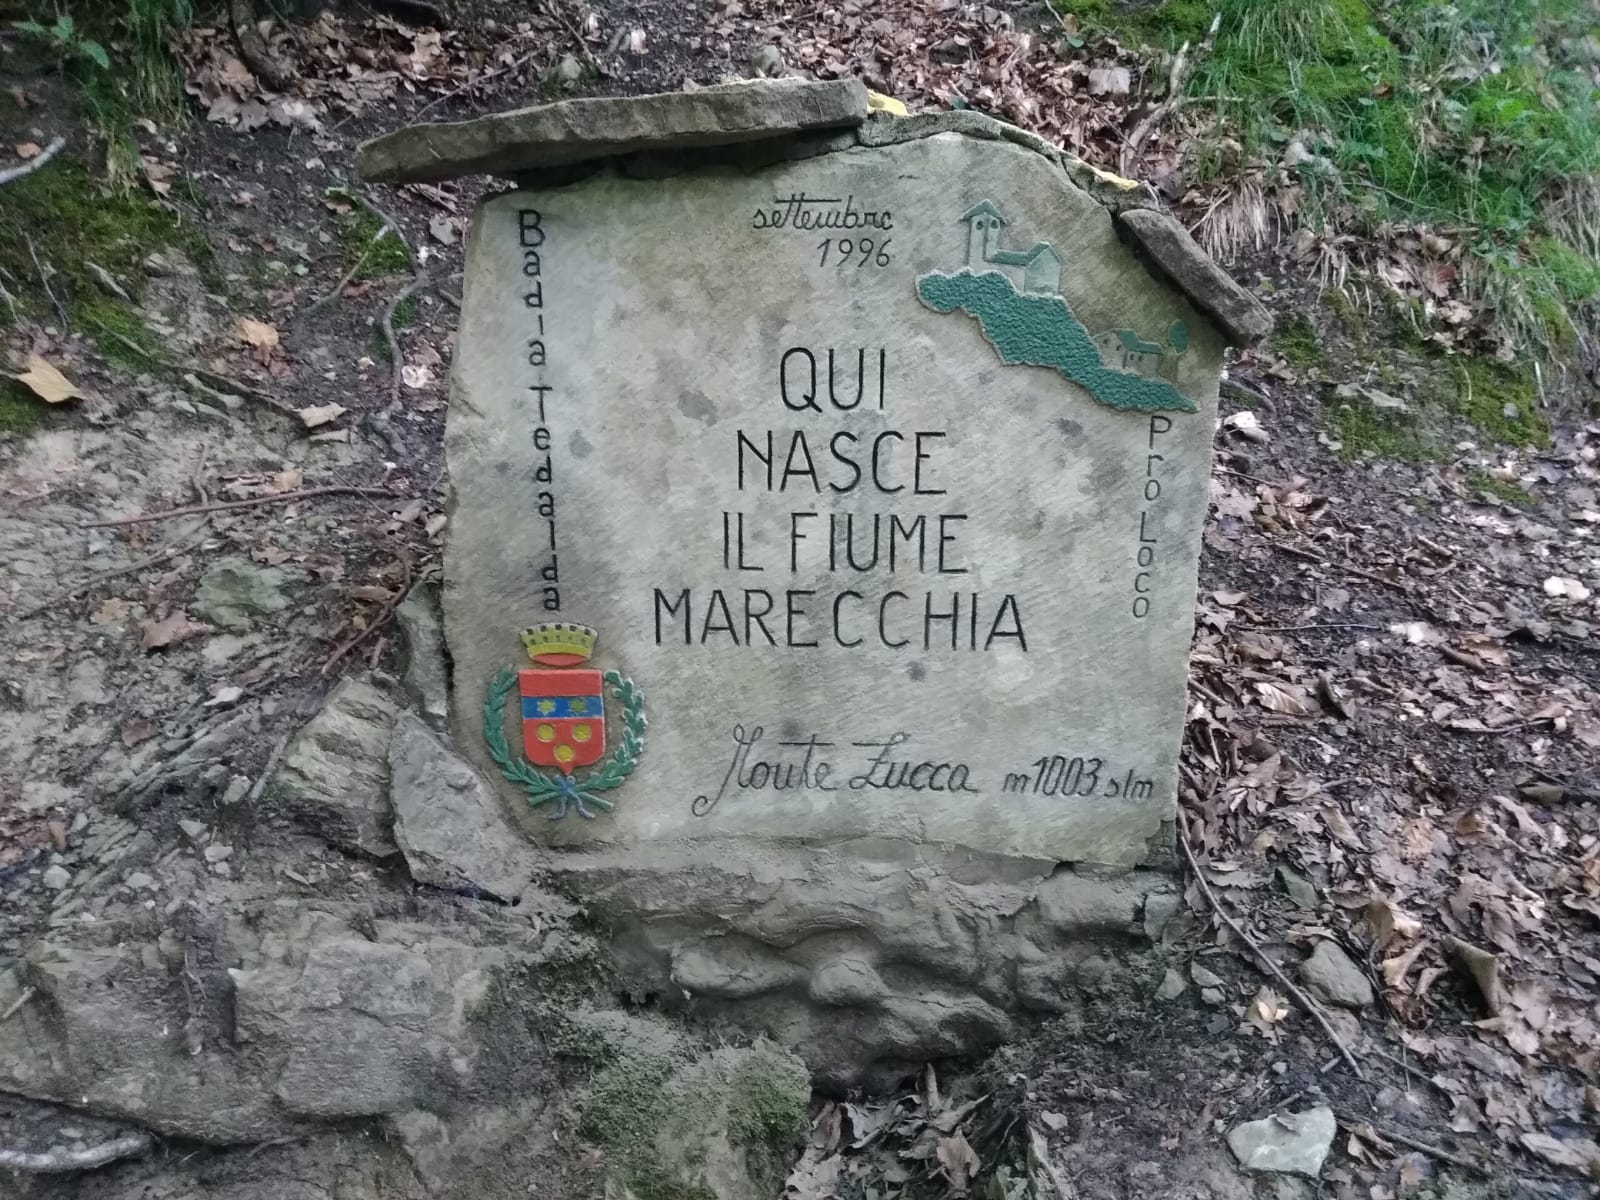 The source of Marecchia river